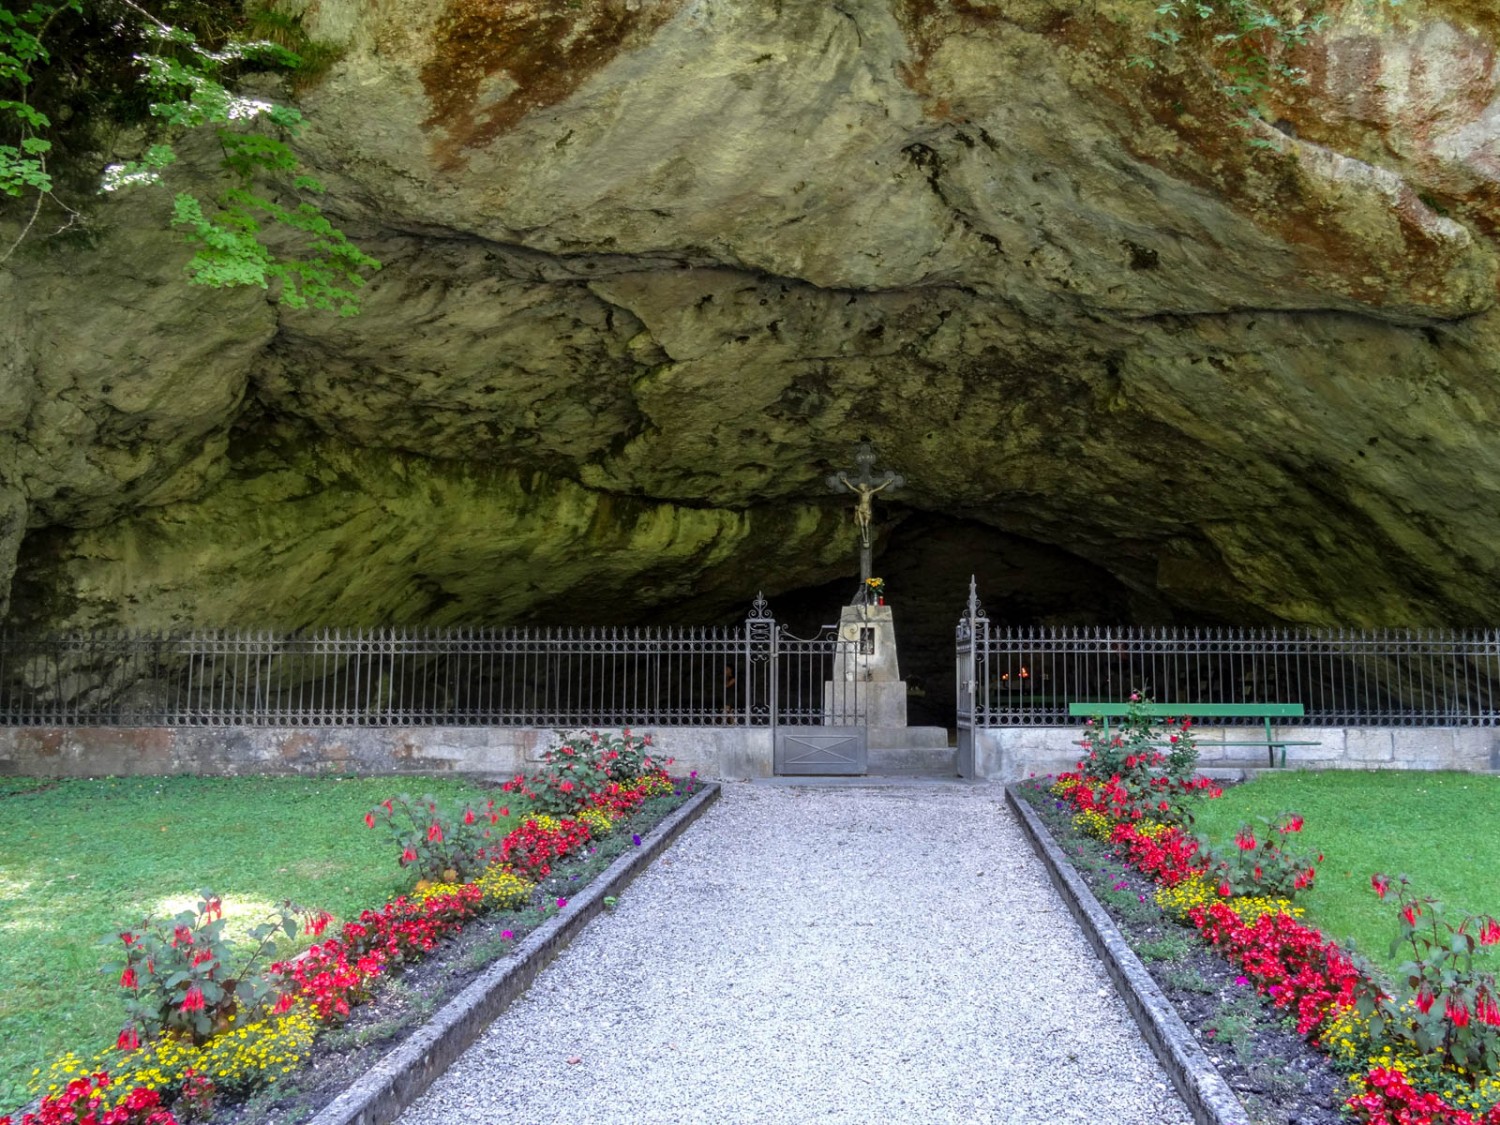 Der Eingang und die Grotte sind liebevoll gepflegt. Bild: Vera In-Albon